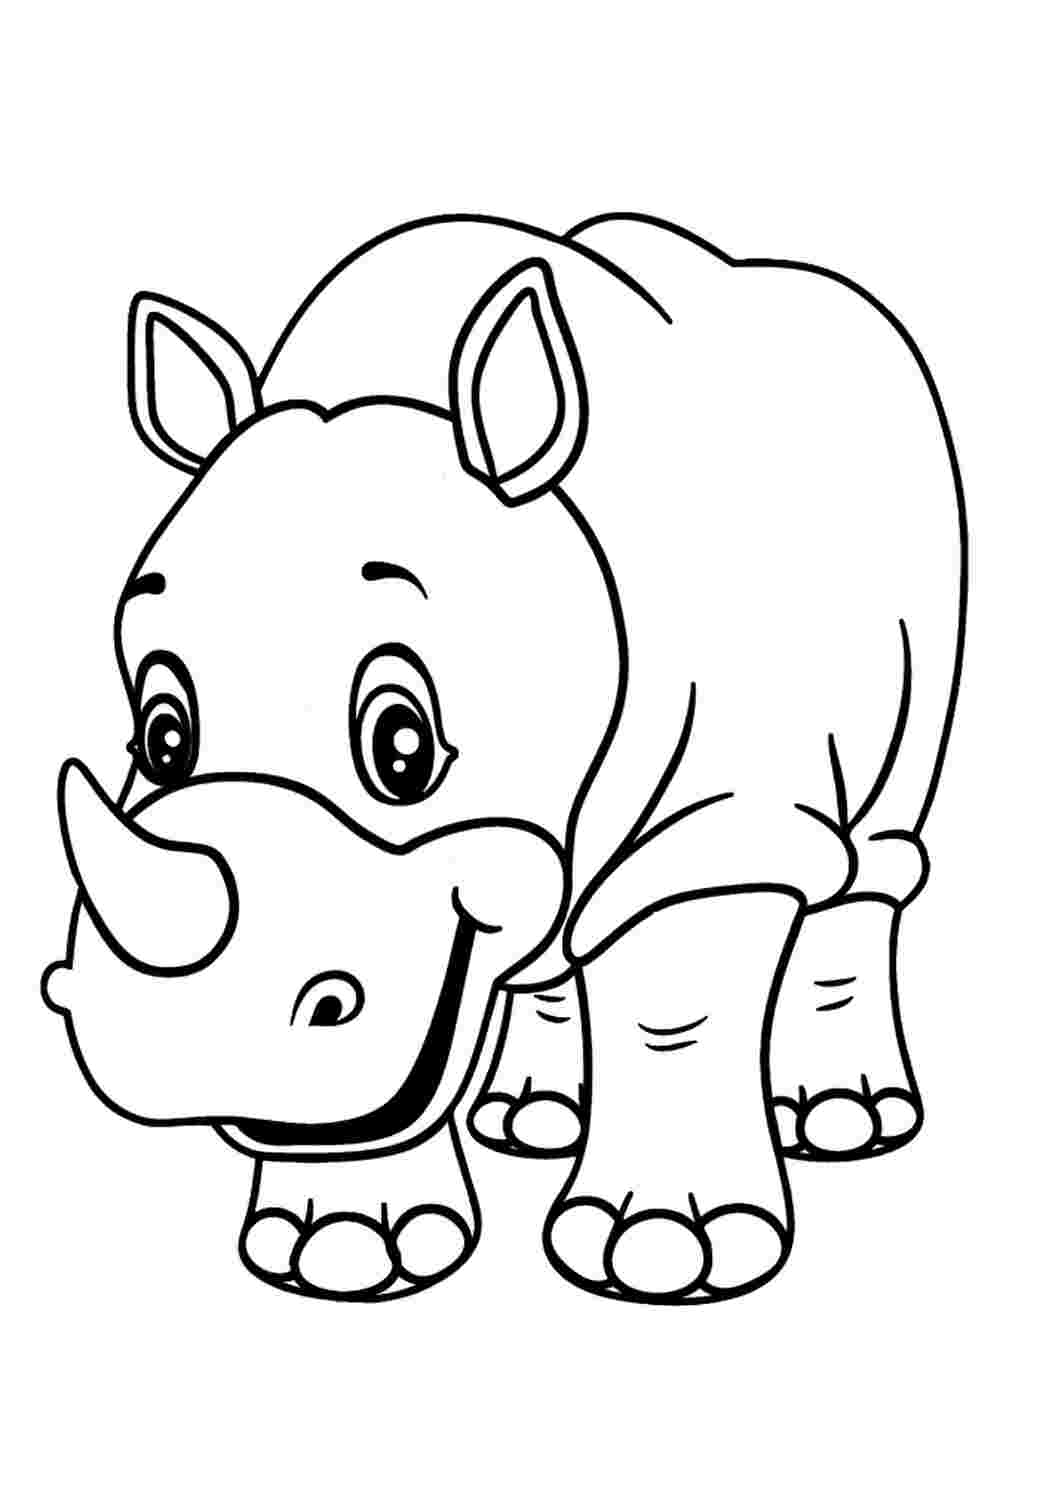 Раскраска носорог для детей 5-6 лет